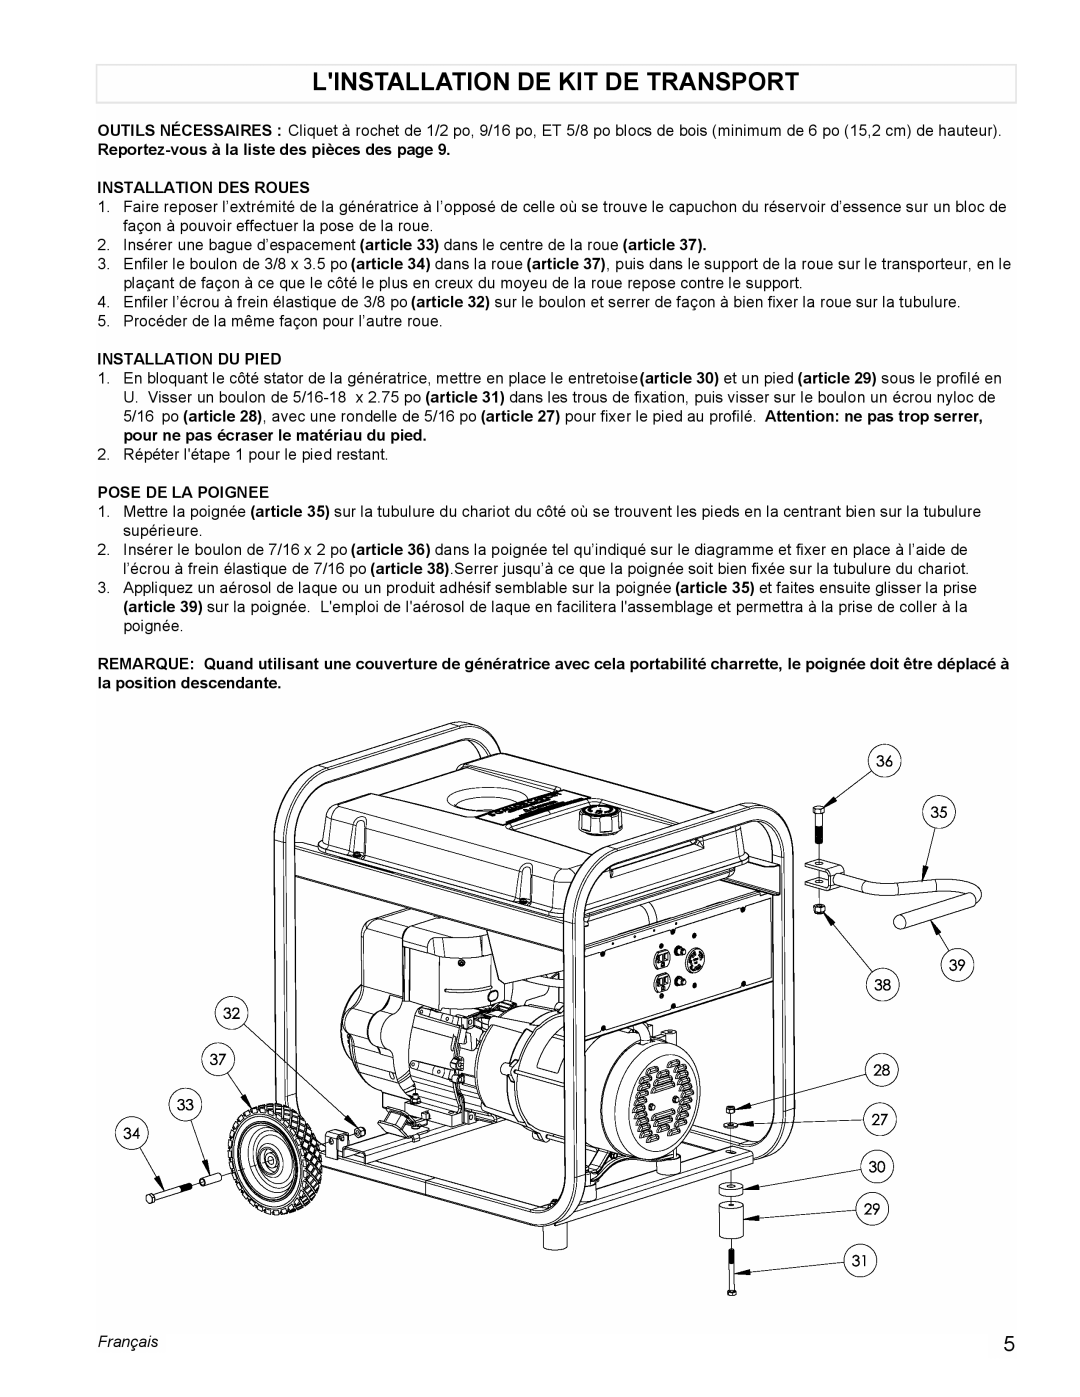 Powermate PM0525303.02 Linstallation De Kit De Transport, Reportez-vousà la liste des pièces des page, Pose De La Poignee 